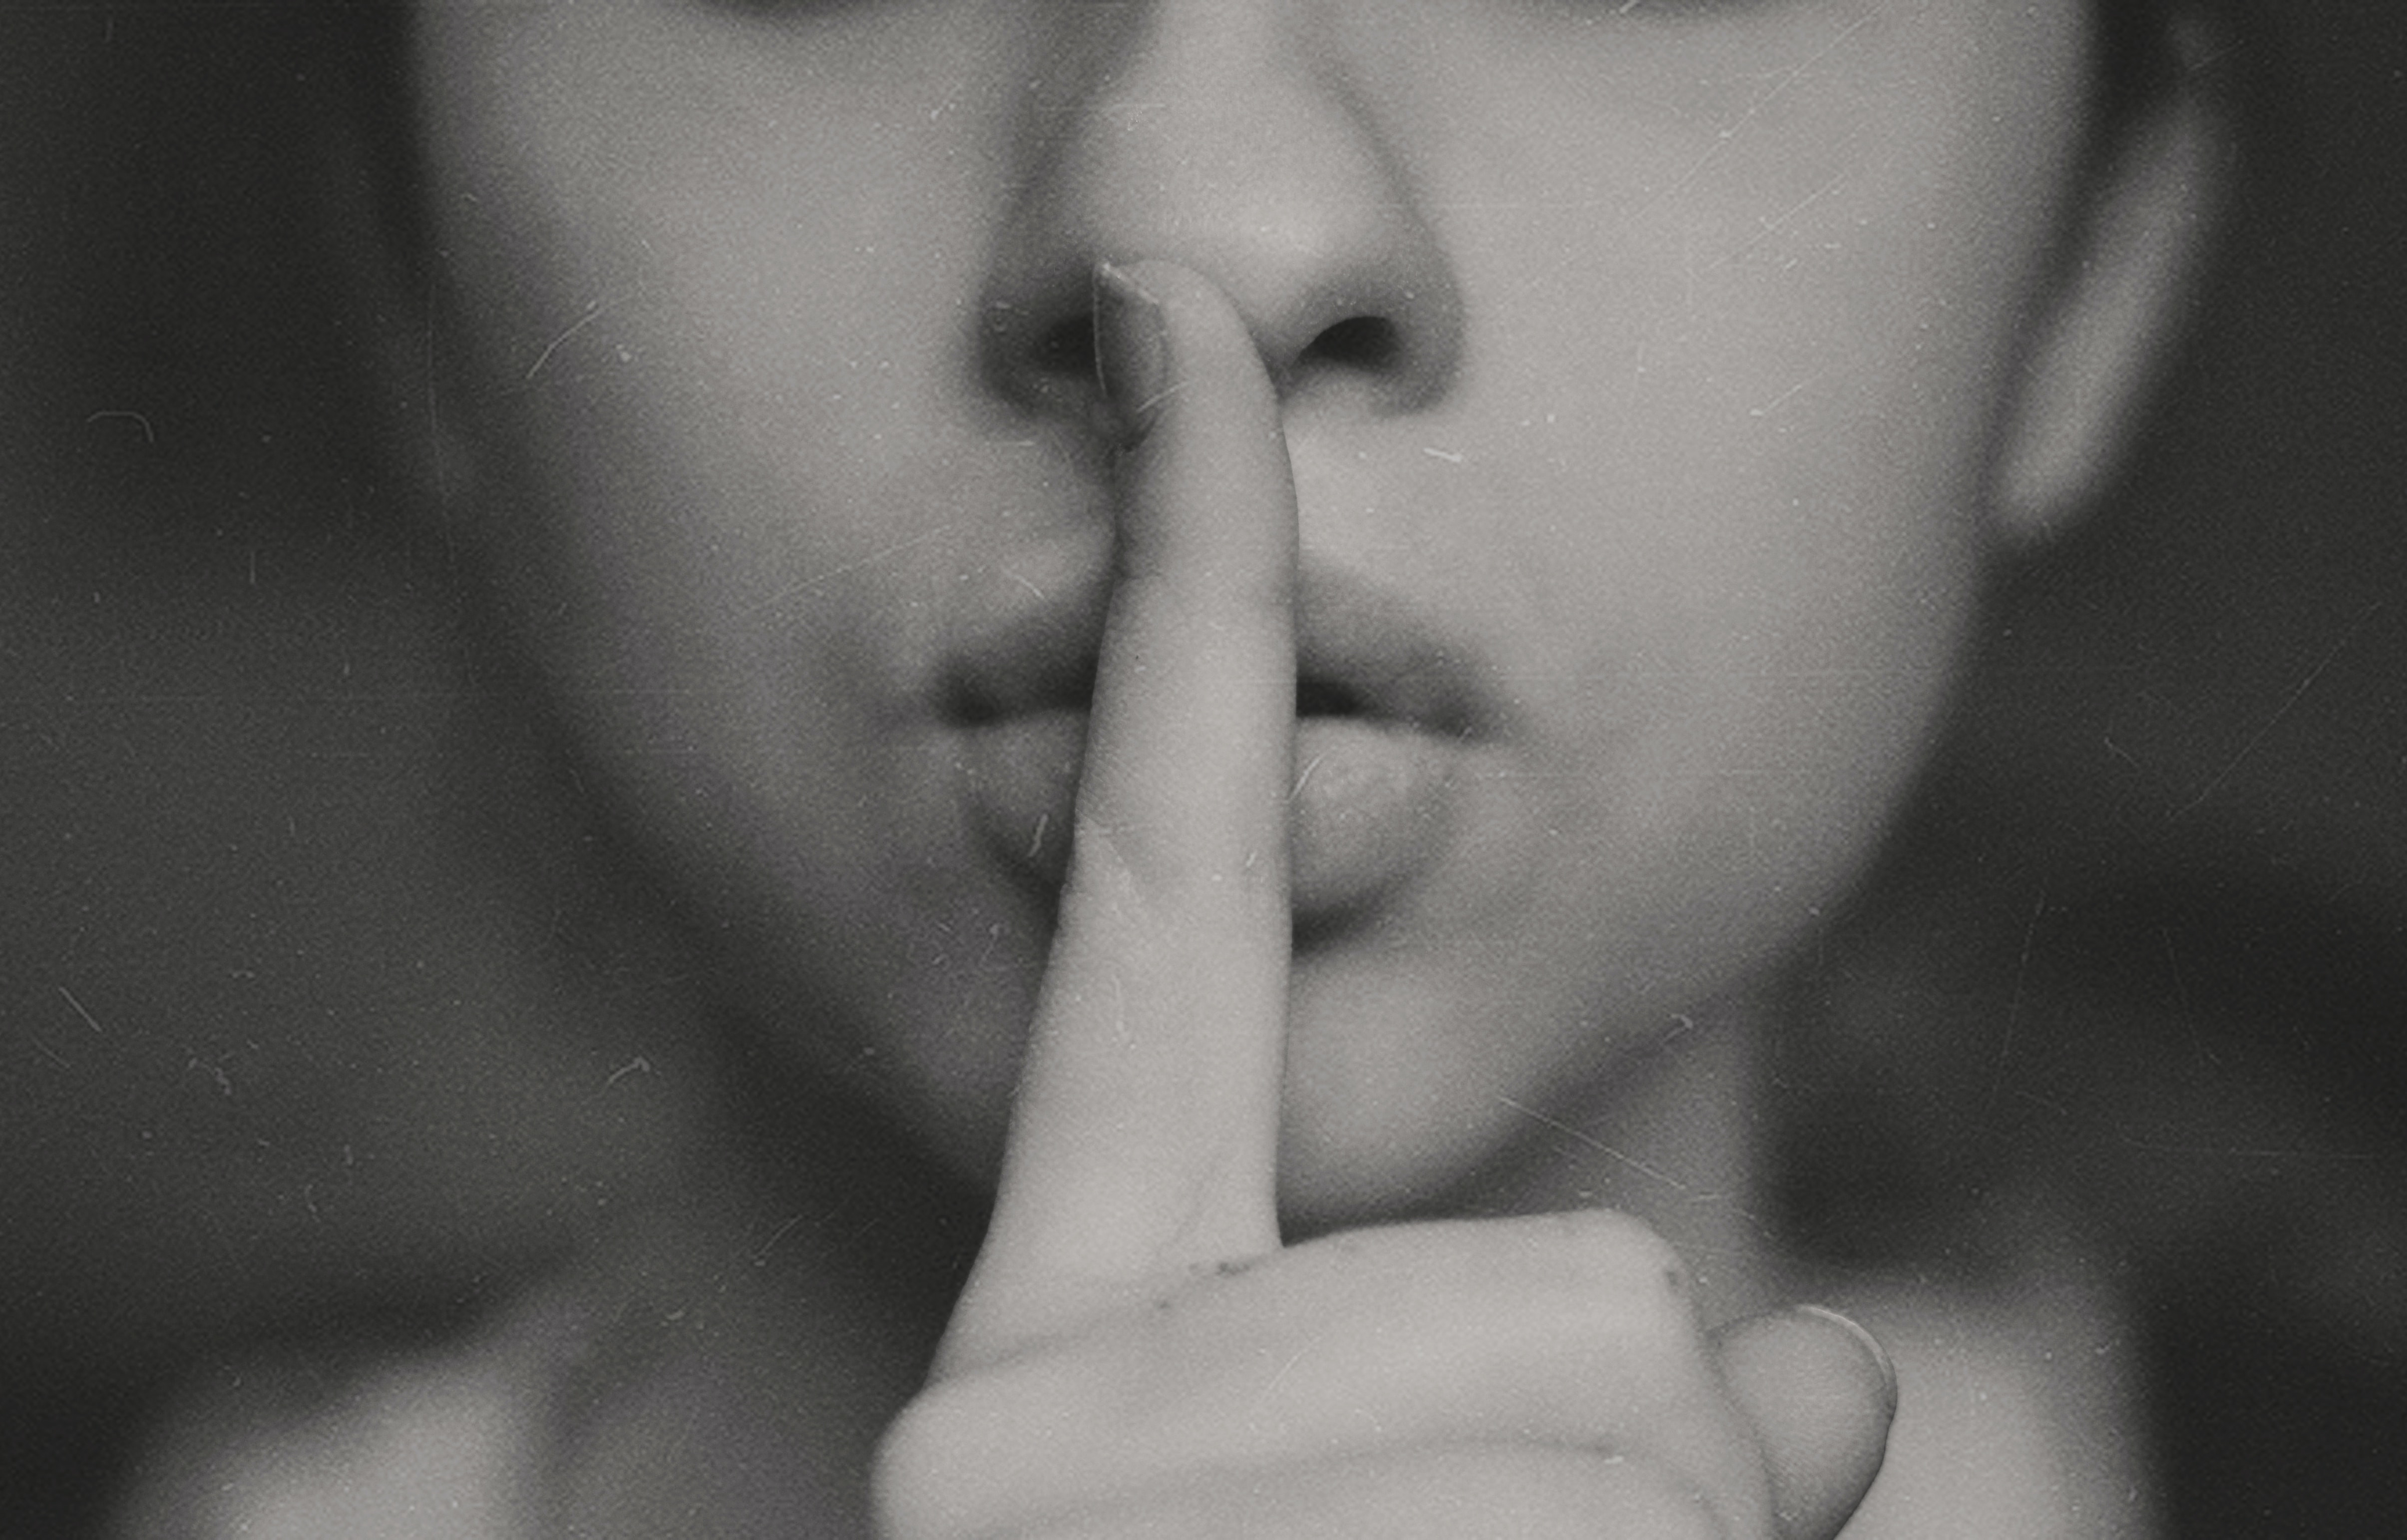 Тише а то они услышат. Палец прижатый к губам. Закрывает рот рукой. Палец прикрывает рот. Тишина молчание.